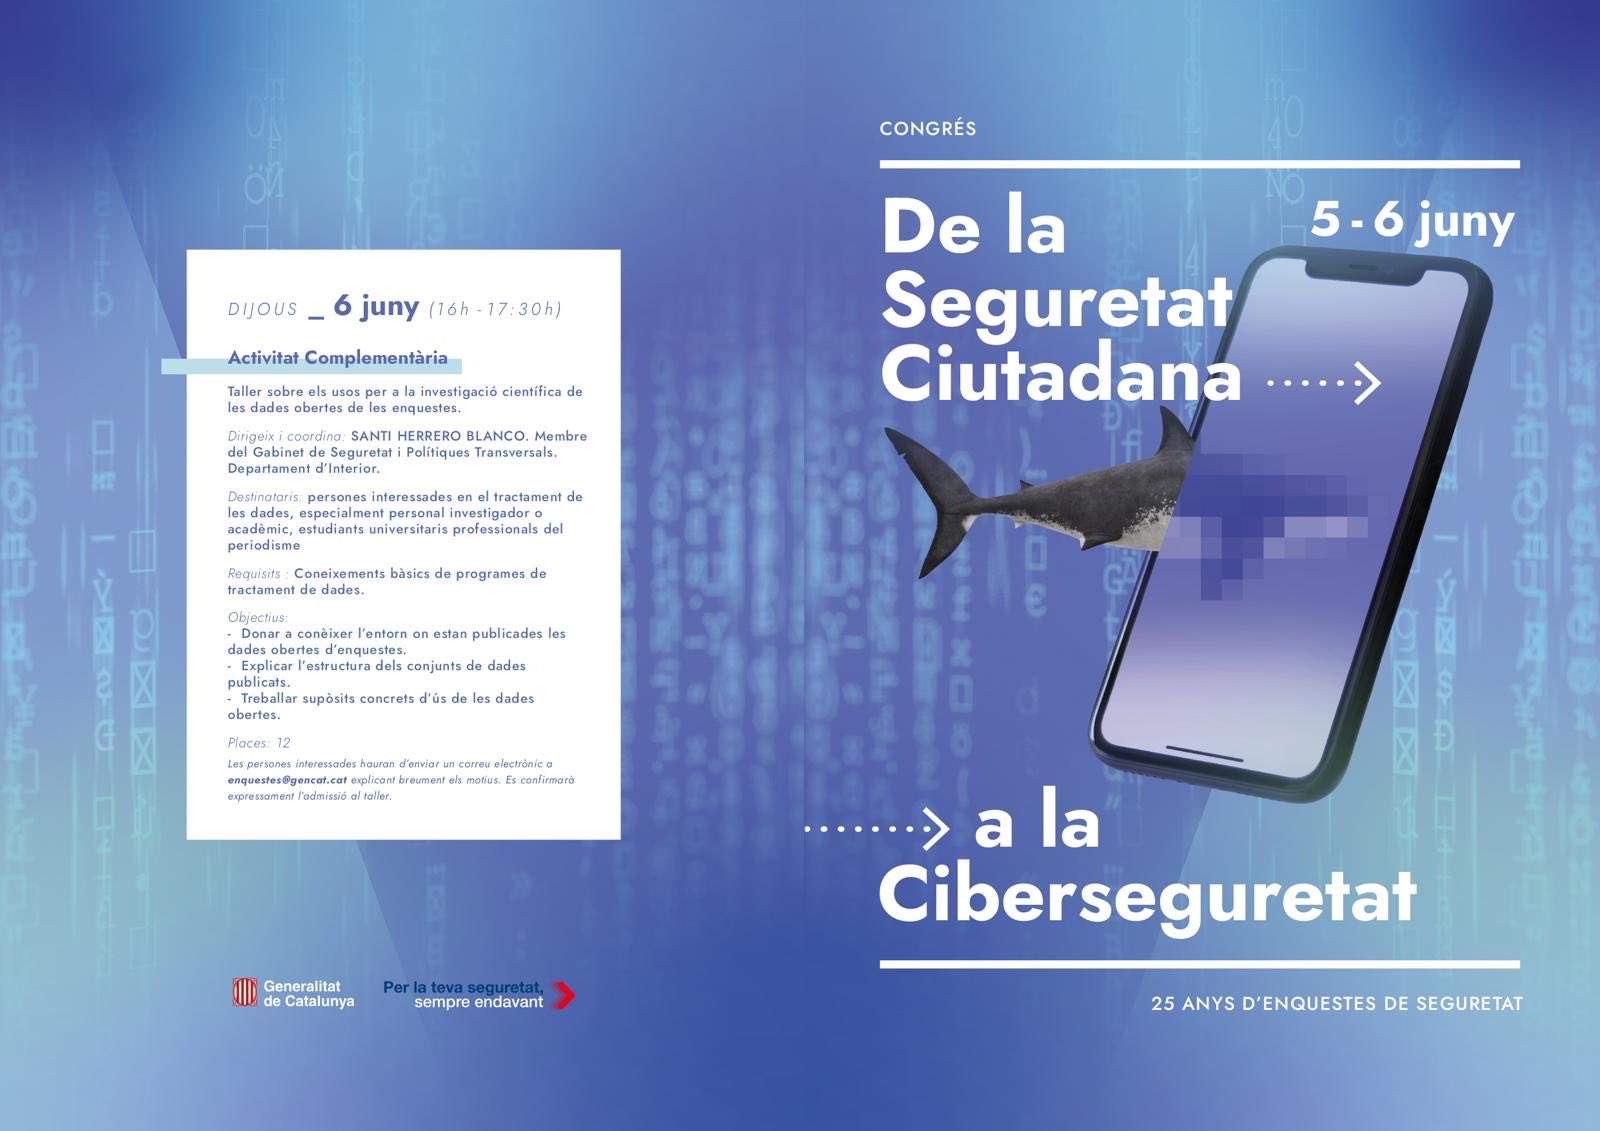 Barcelona acull el congrés "De la seguretat ciutadana a la ciberseguretat. 25 anys d’enquestes de seguretat"